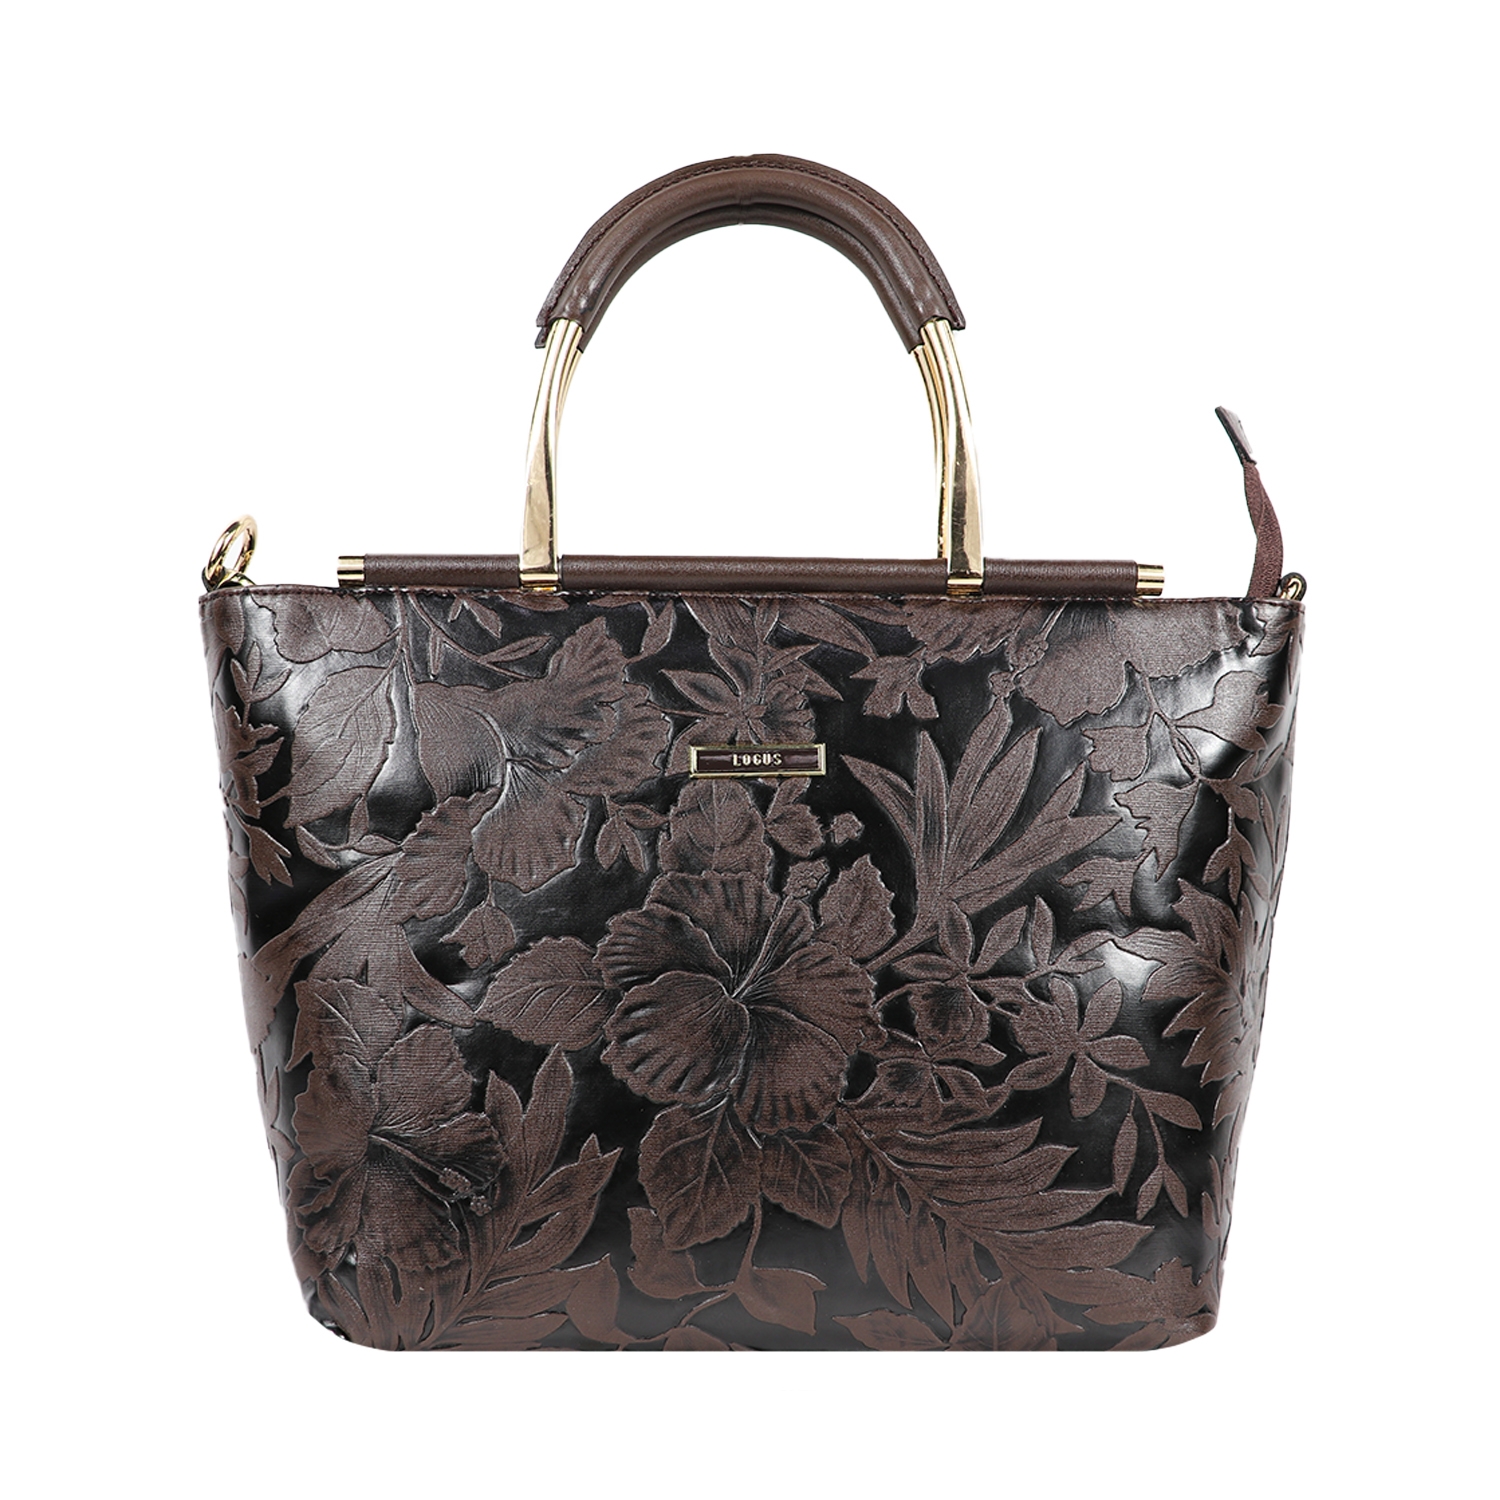 Black Embellished Tote Handbag for women 